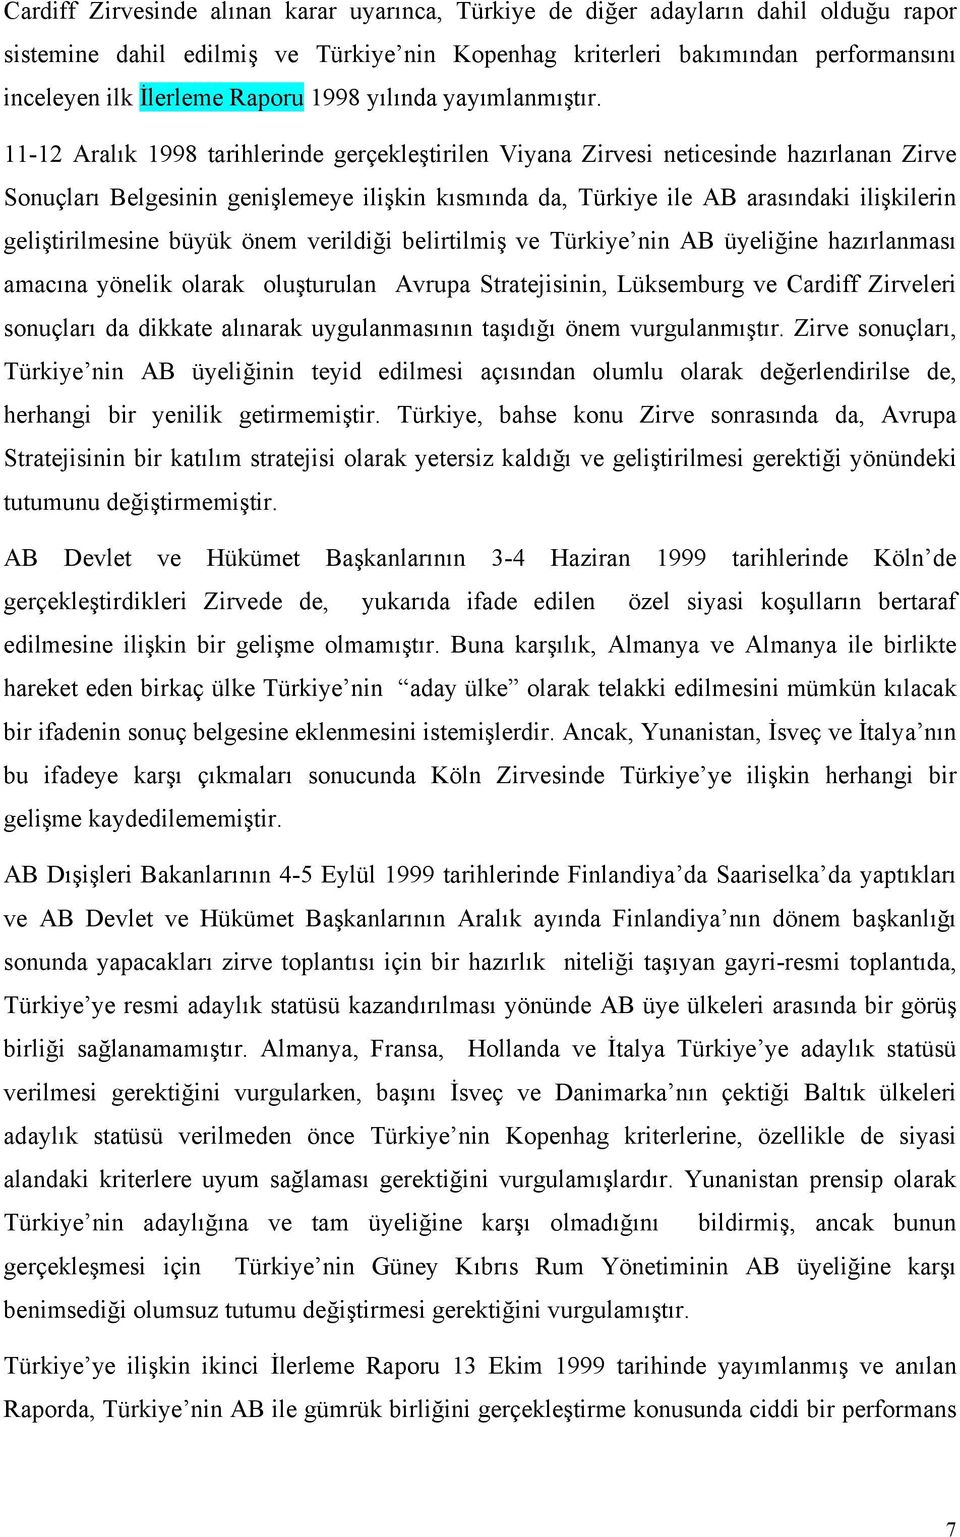 11-12 Aralık 1998 tarihlerinde gerçekleştirilen Viyana Zirvesi neticesinde hazırlanan Zirve Sonuçları Belgesinin genişlemeye ilişkin kısmında da, Türkiye ile AB arasındaki ilişkilerin